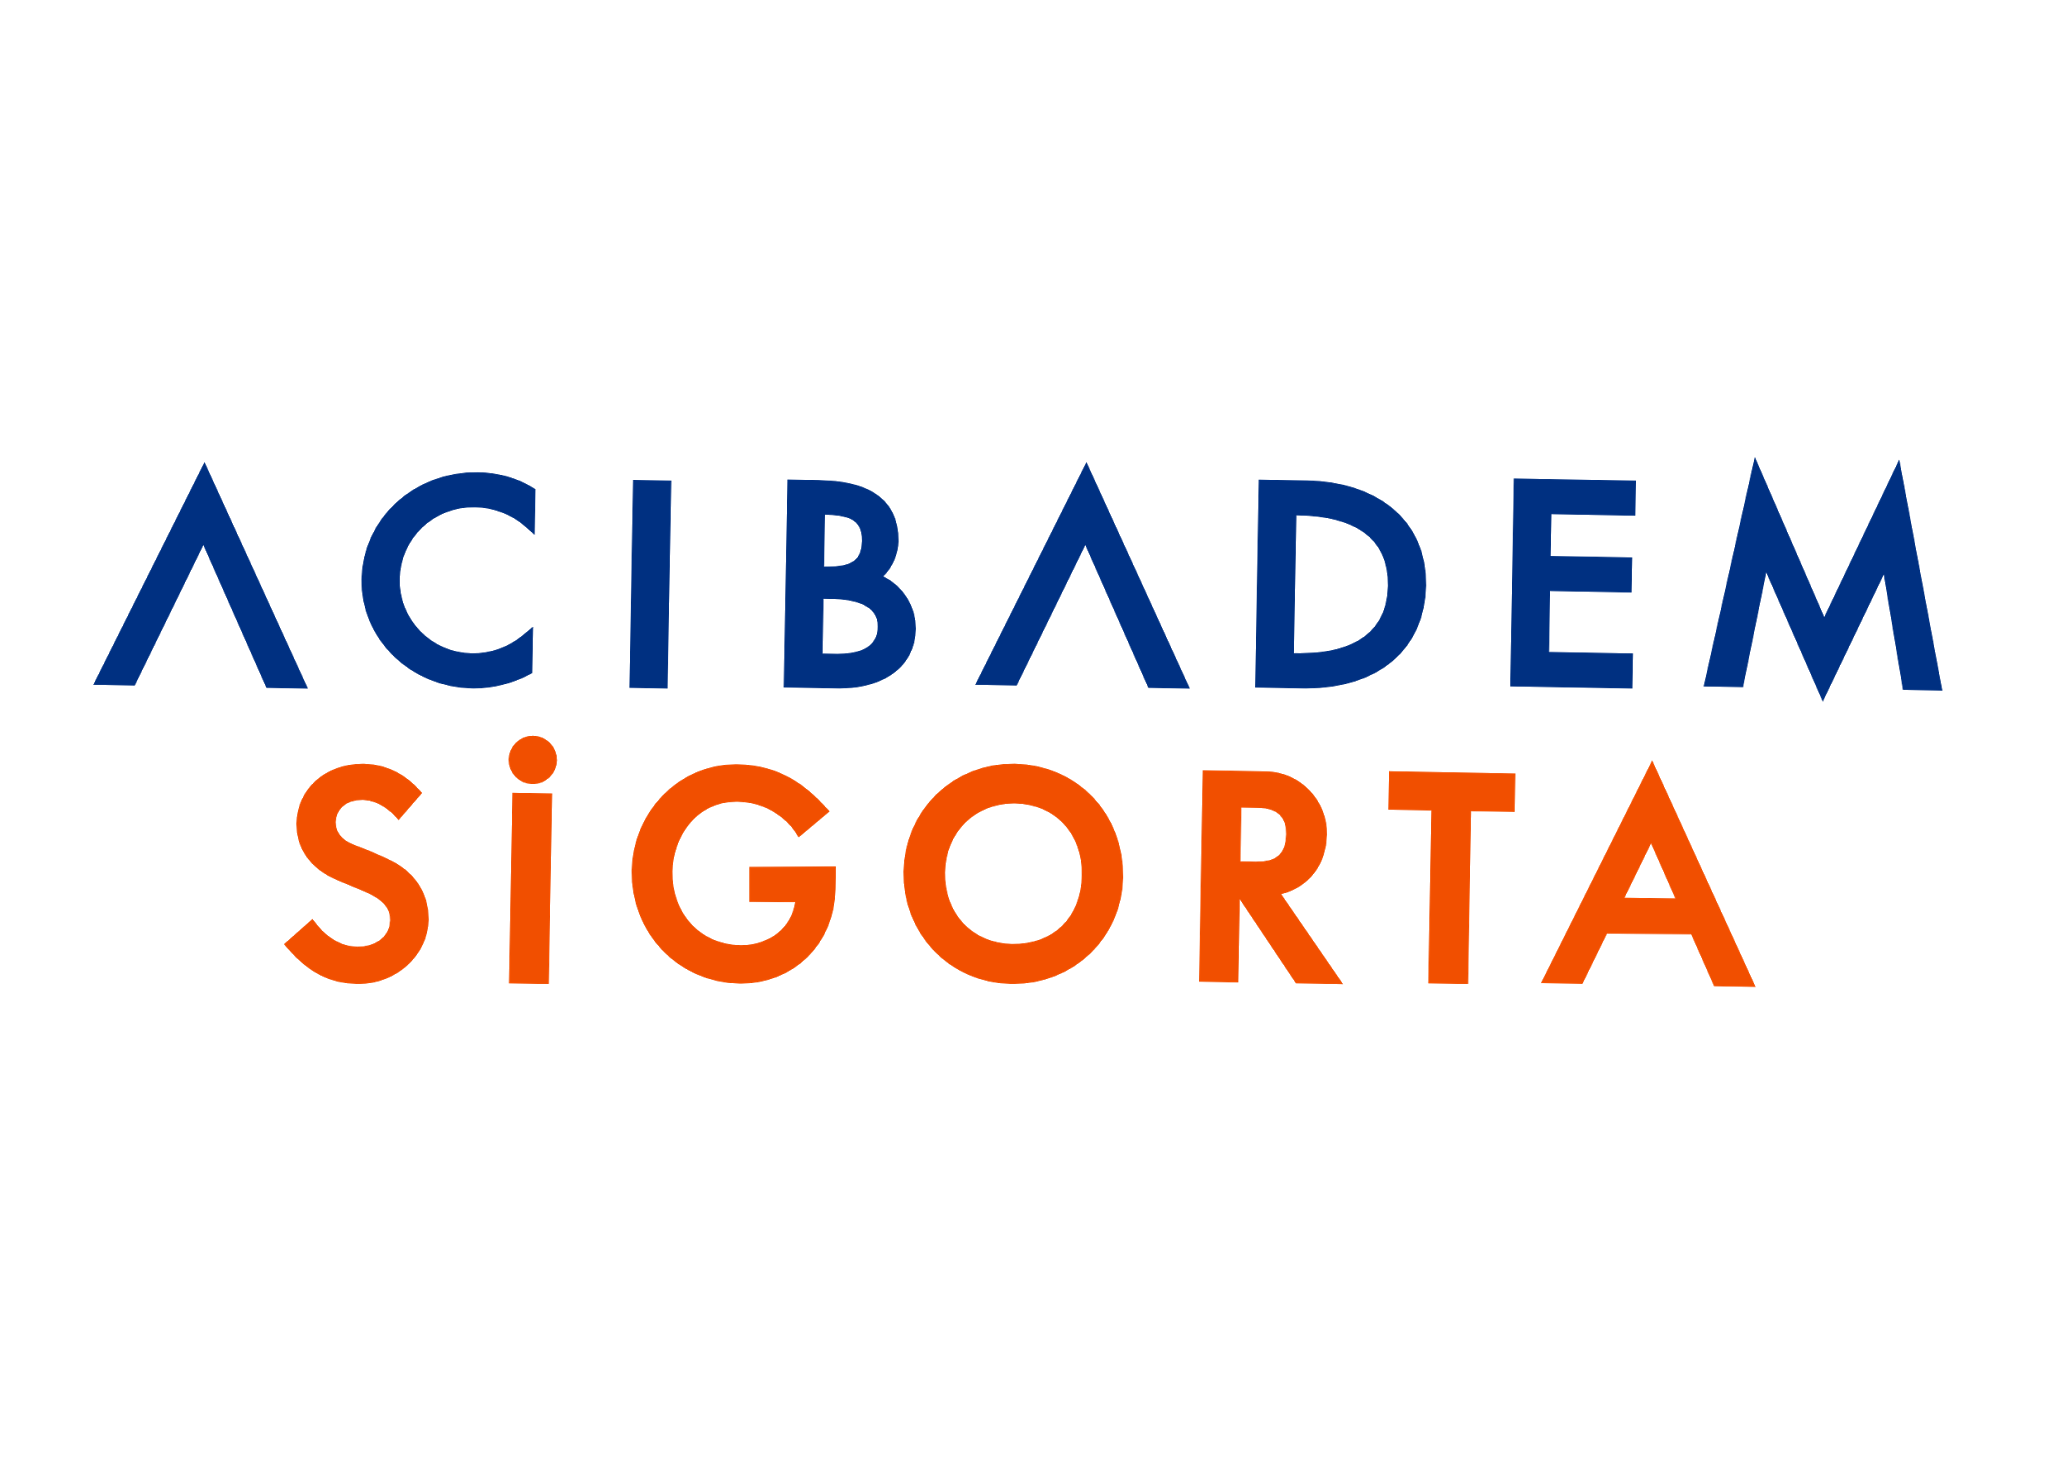 Acıbadem Sigorta - Logo Acibadem Sigorta PNG, Acibadem Sigorta Logo PNG - Free PNG